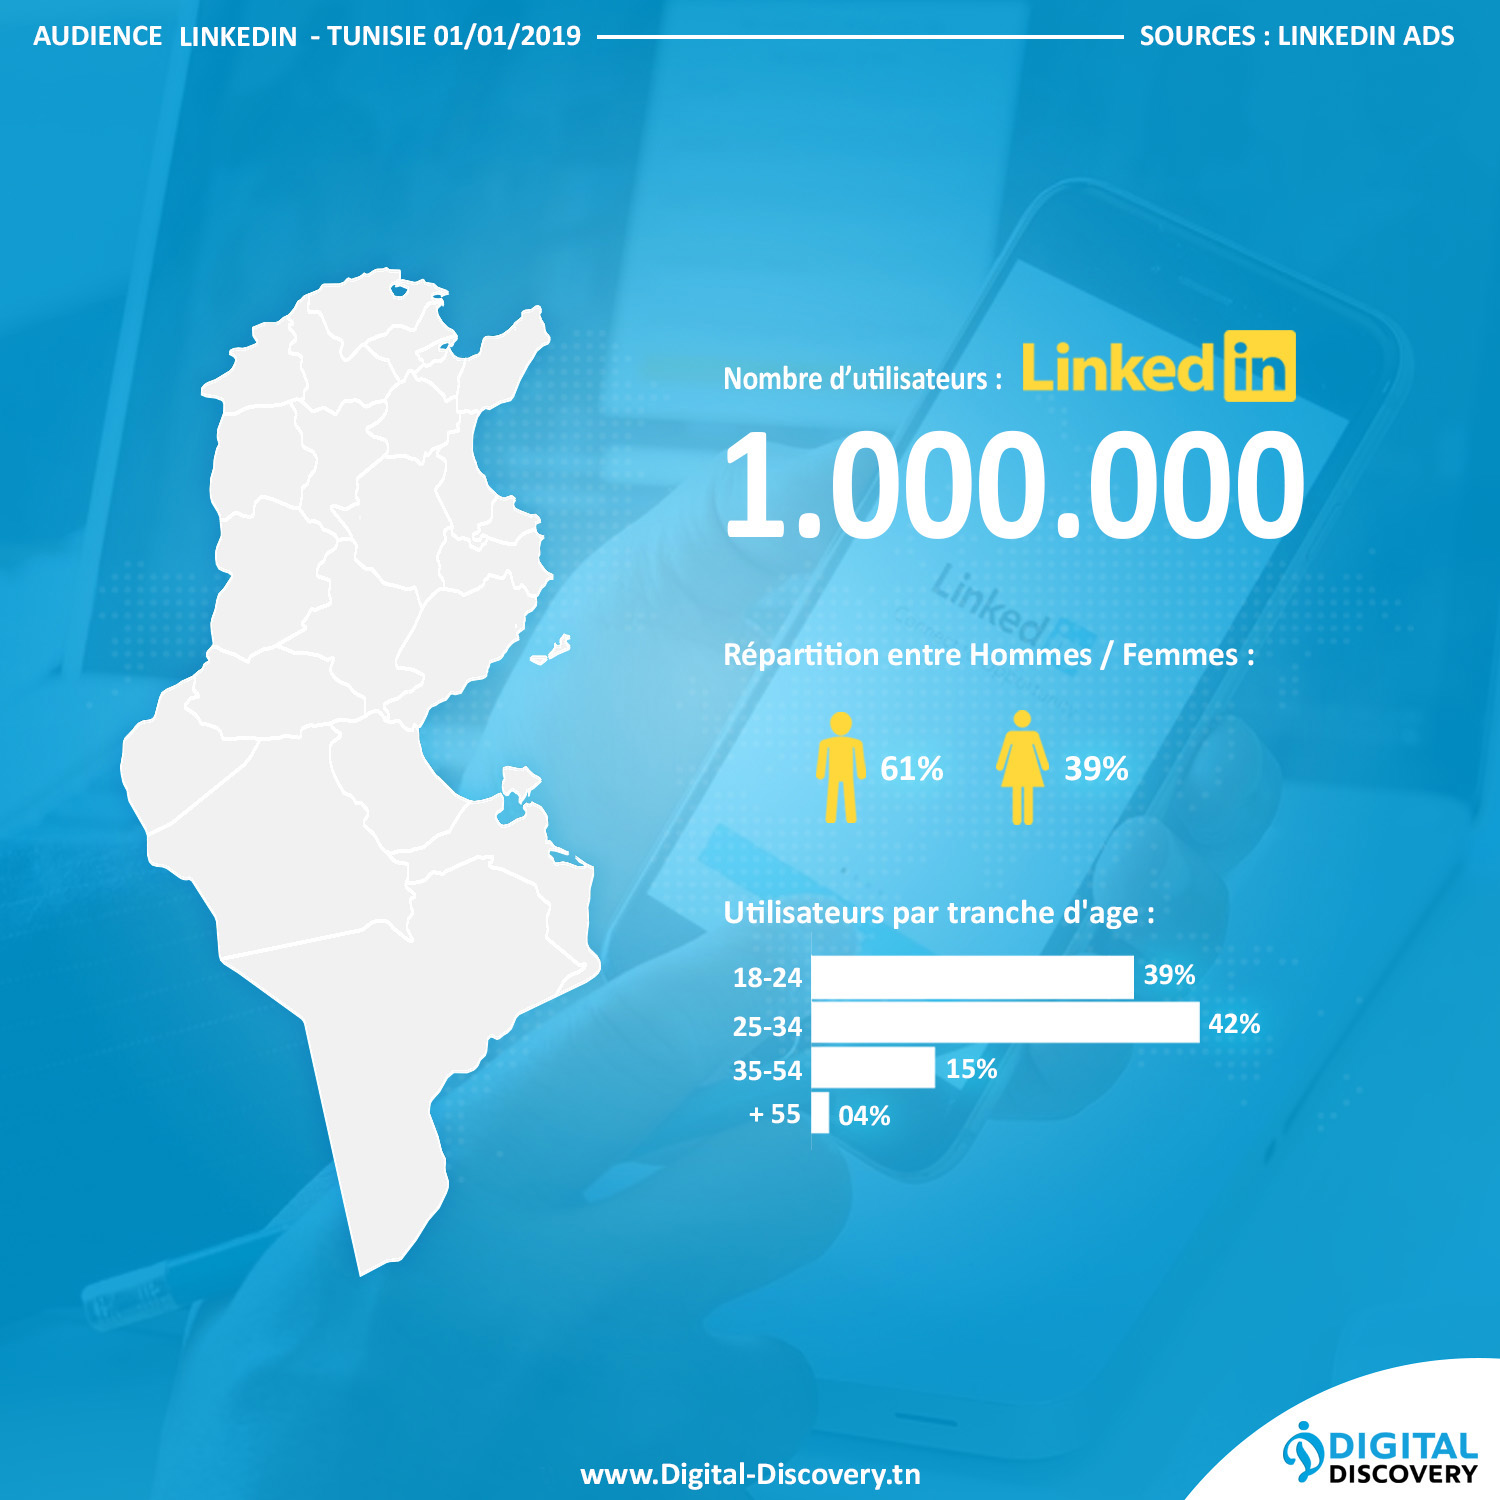 chiffres reseaux sociaux tunisie 2019 linkedin